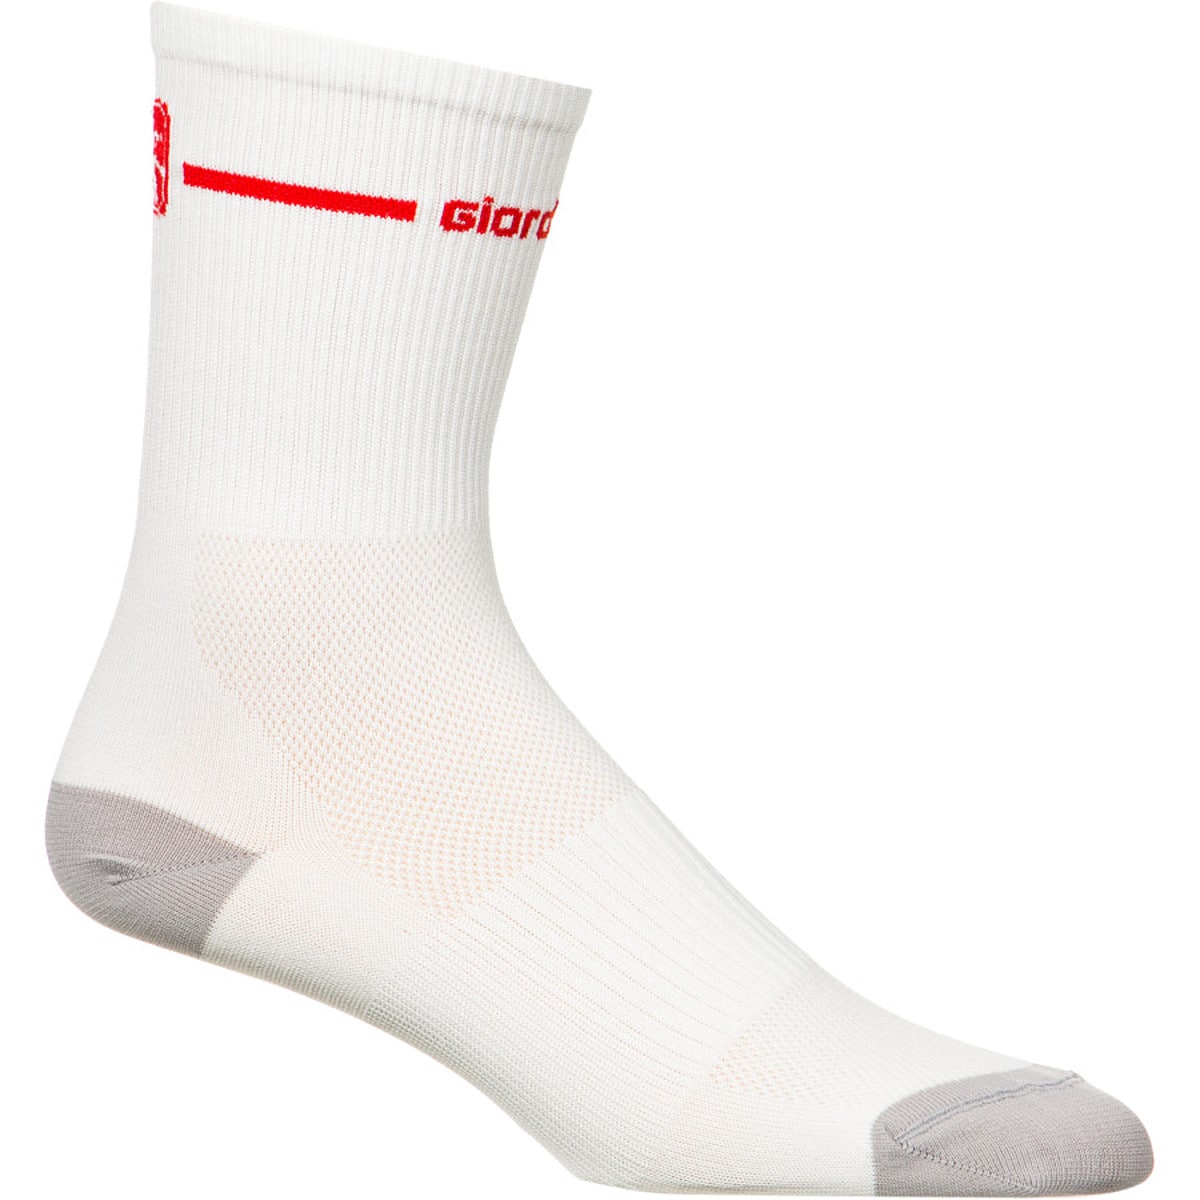 Giordana Trade Tall Cuff Socks Mens